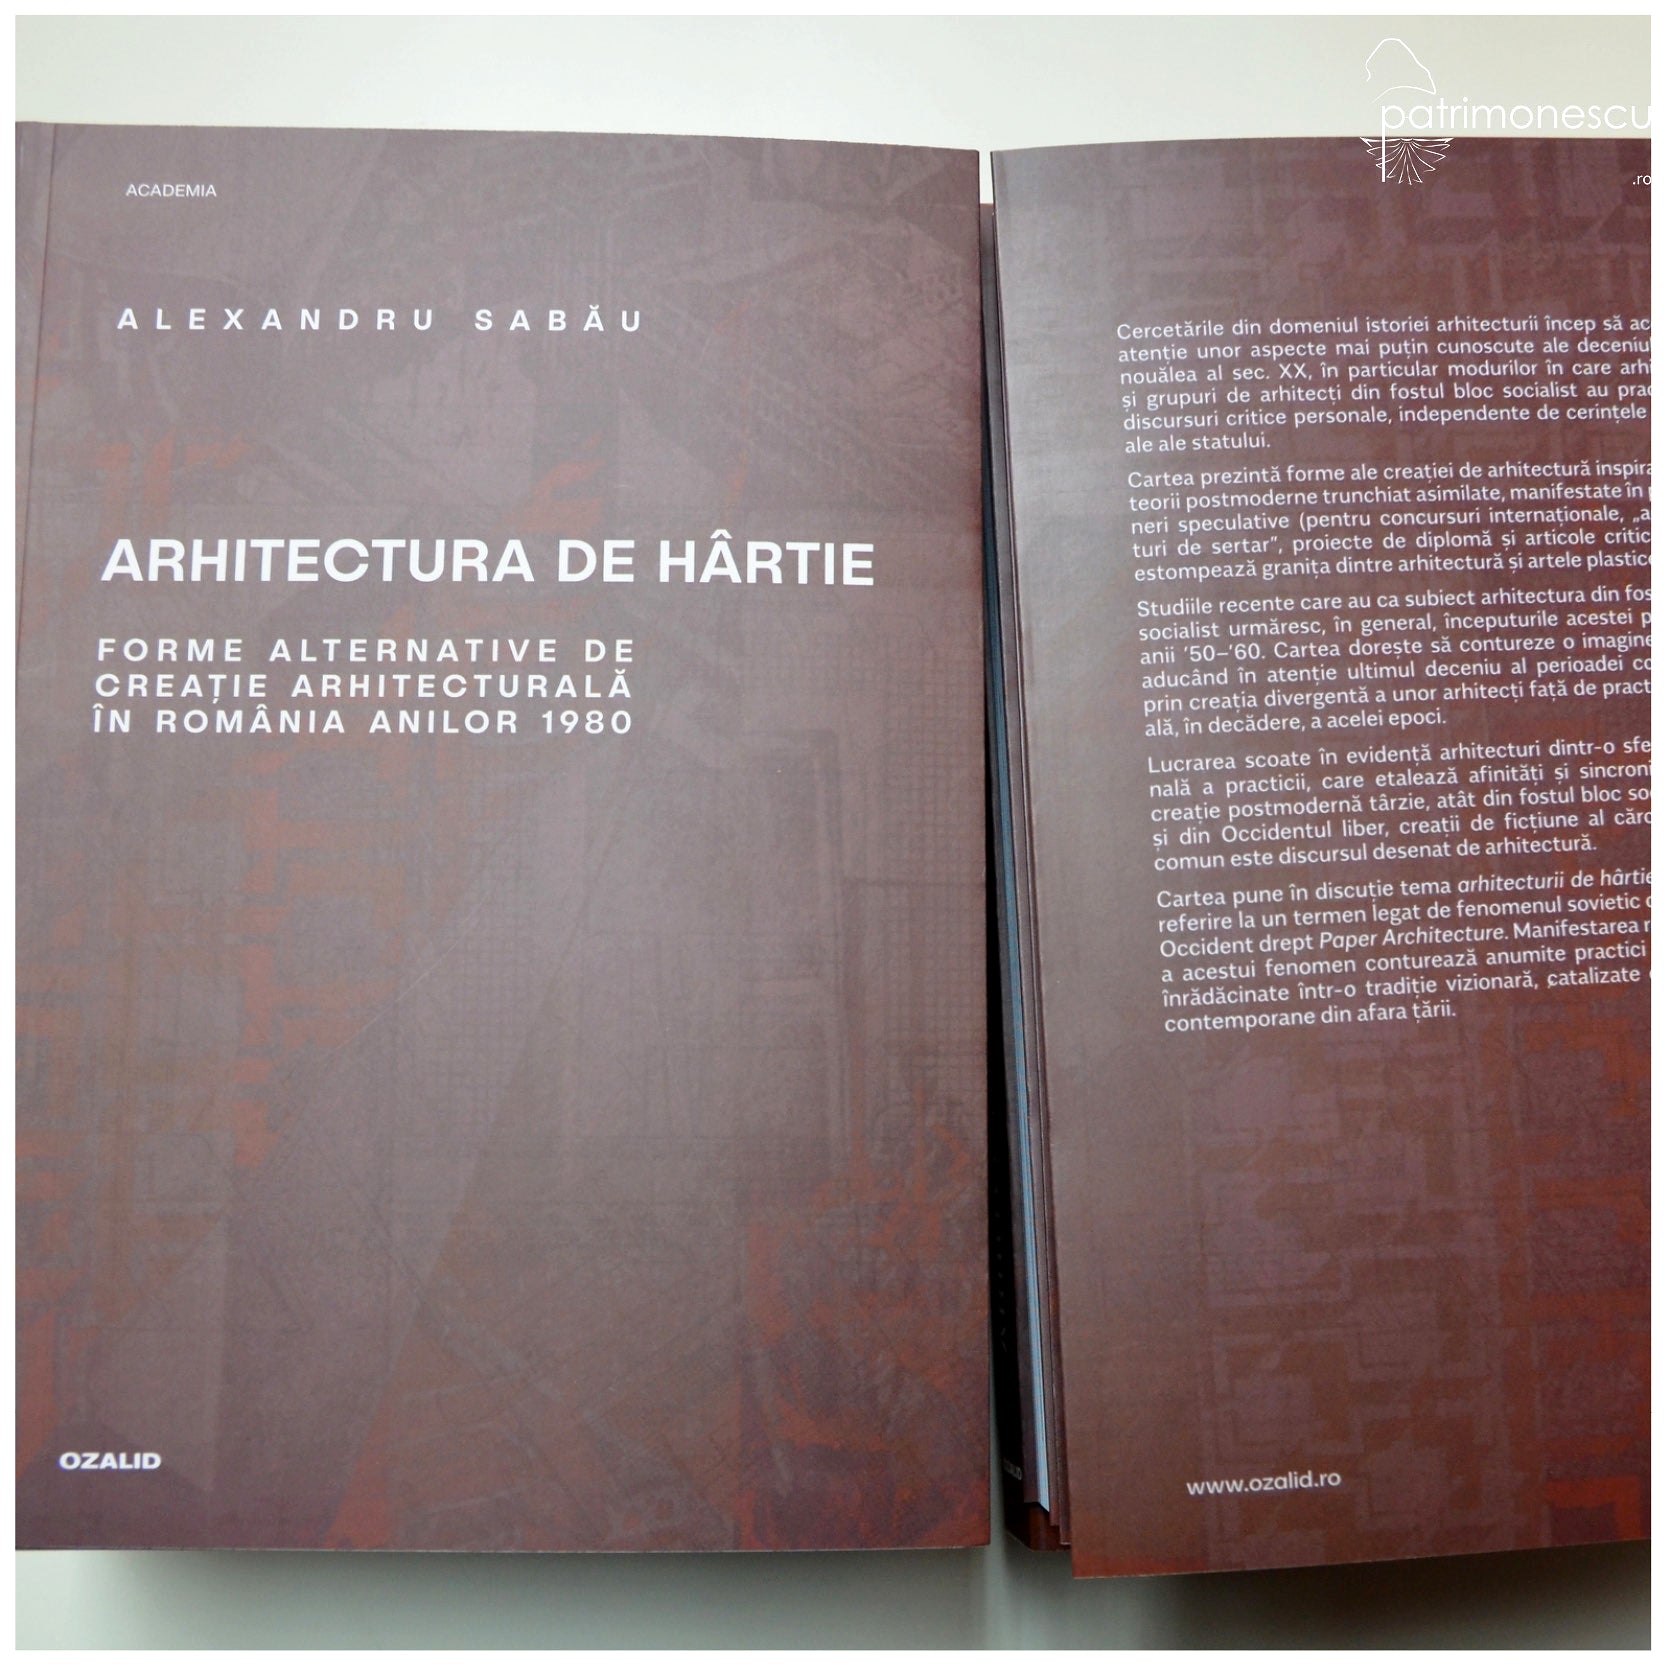 Arhitectura de hârtie. Forme alternative de creație arhitecturală în România anilor 1980